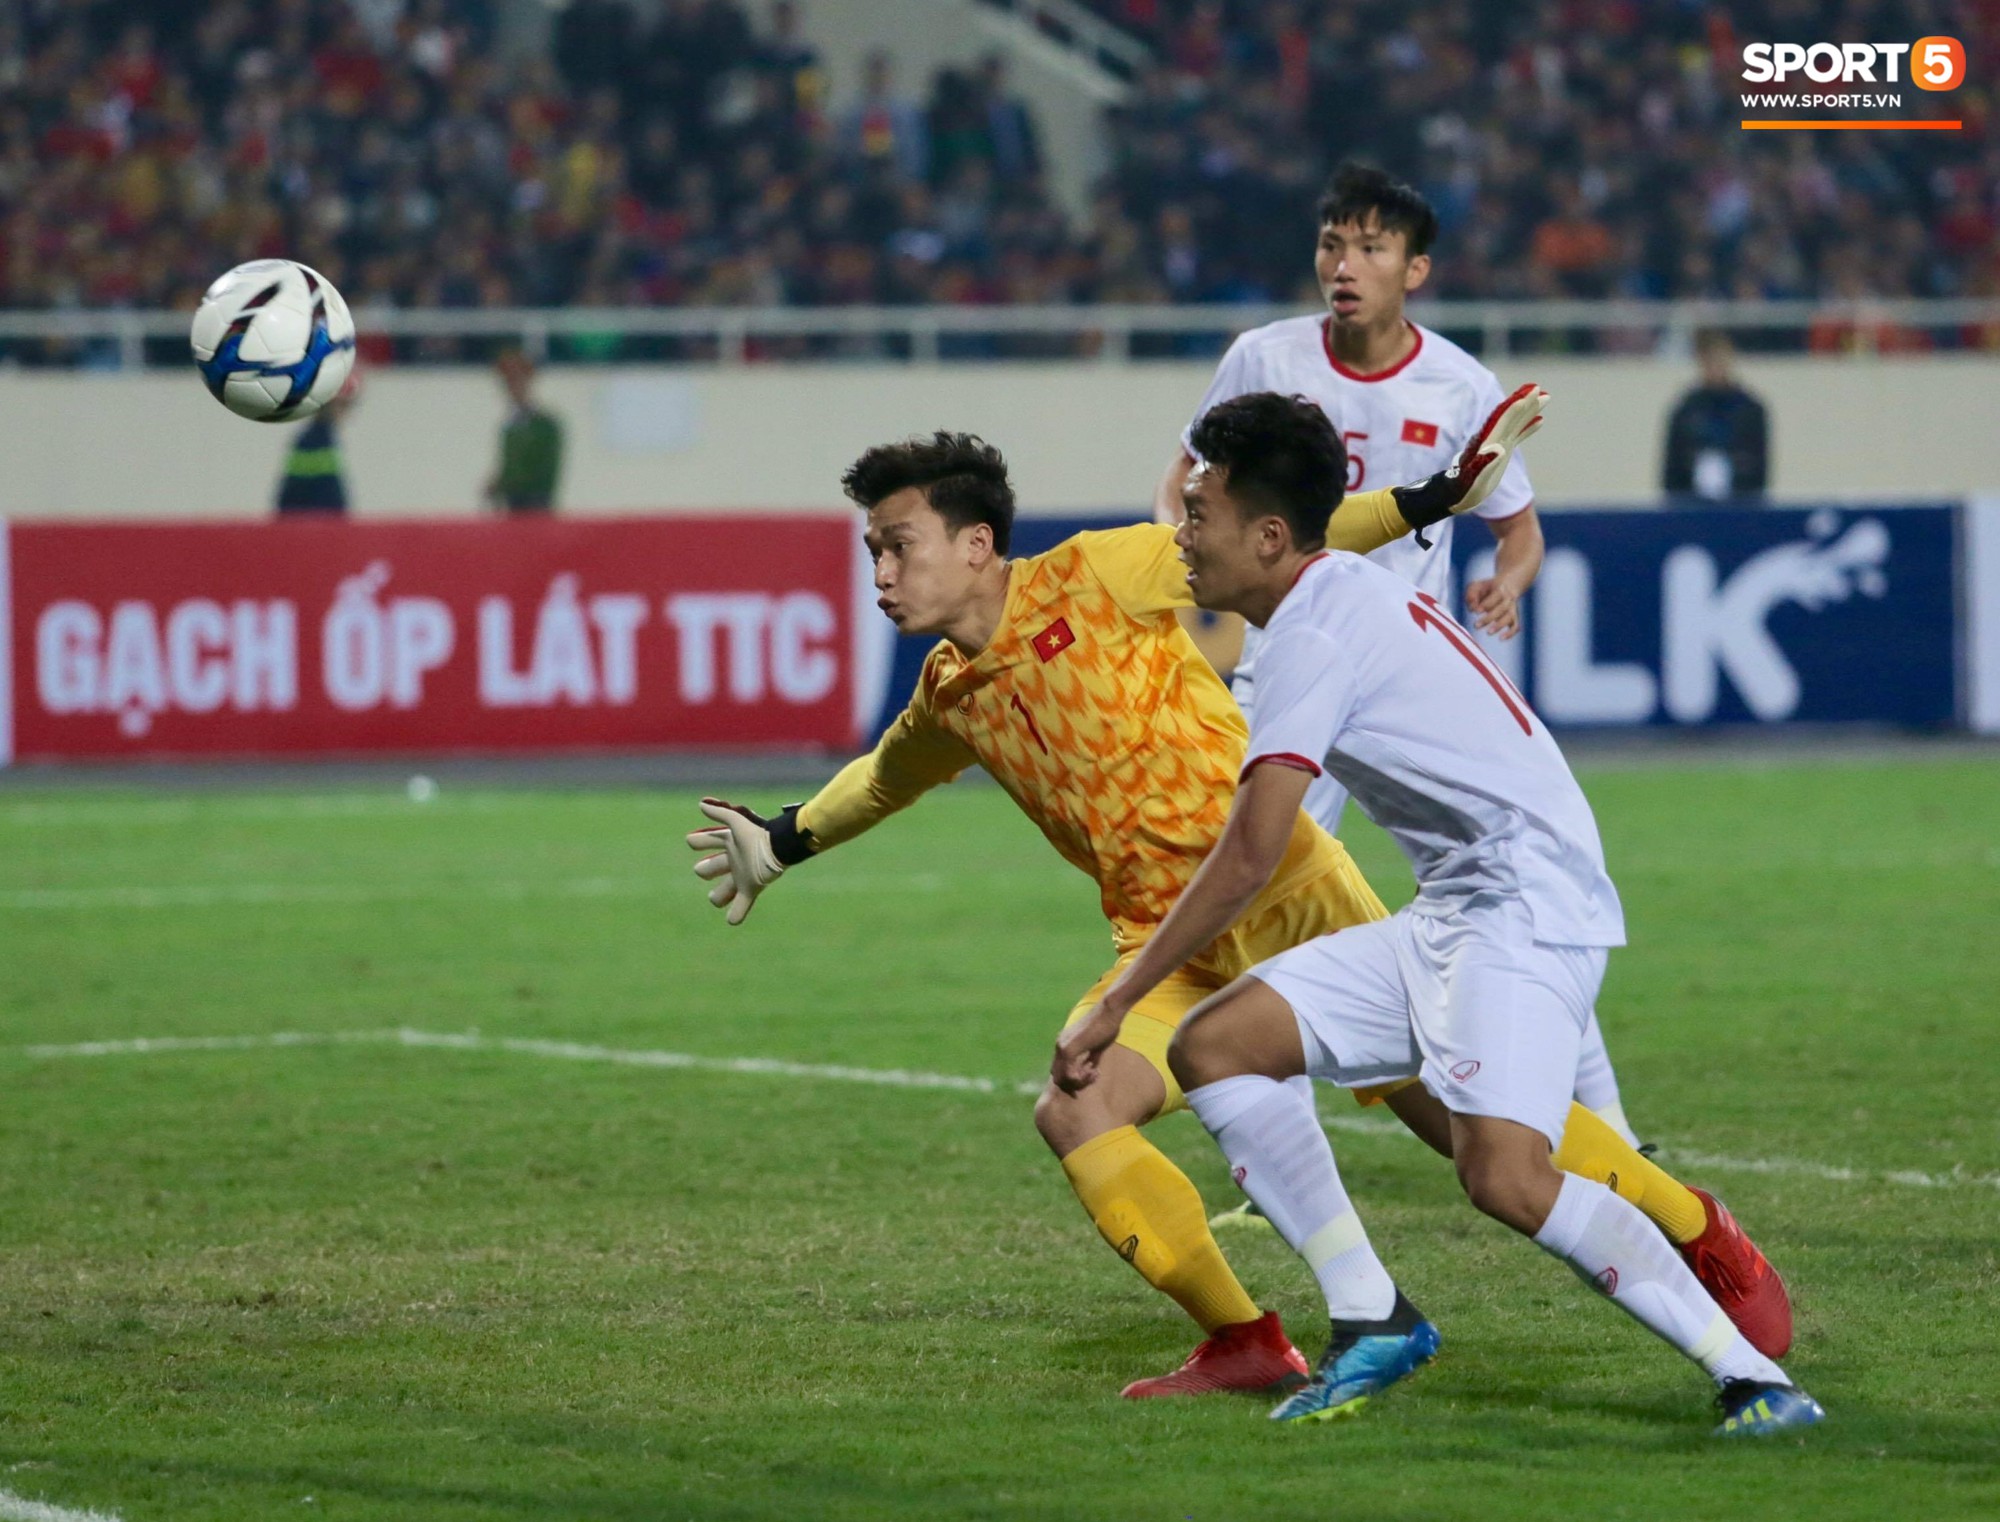 Thủ thành Bùi Tiến Dũng xử lý khó hiểu trong trận đấu với U23 Indonesia - Ảnh 3.